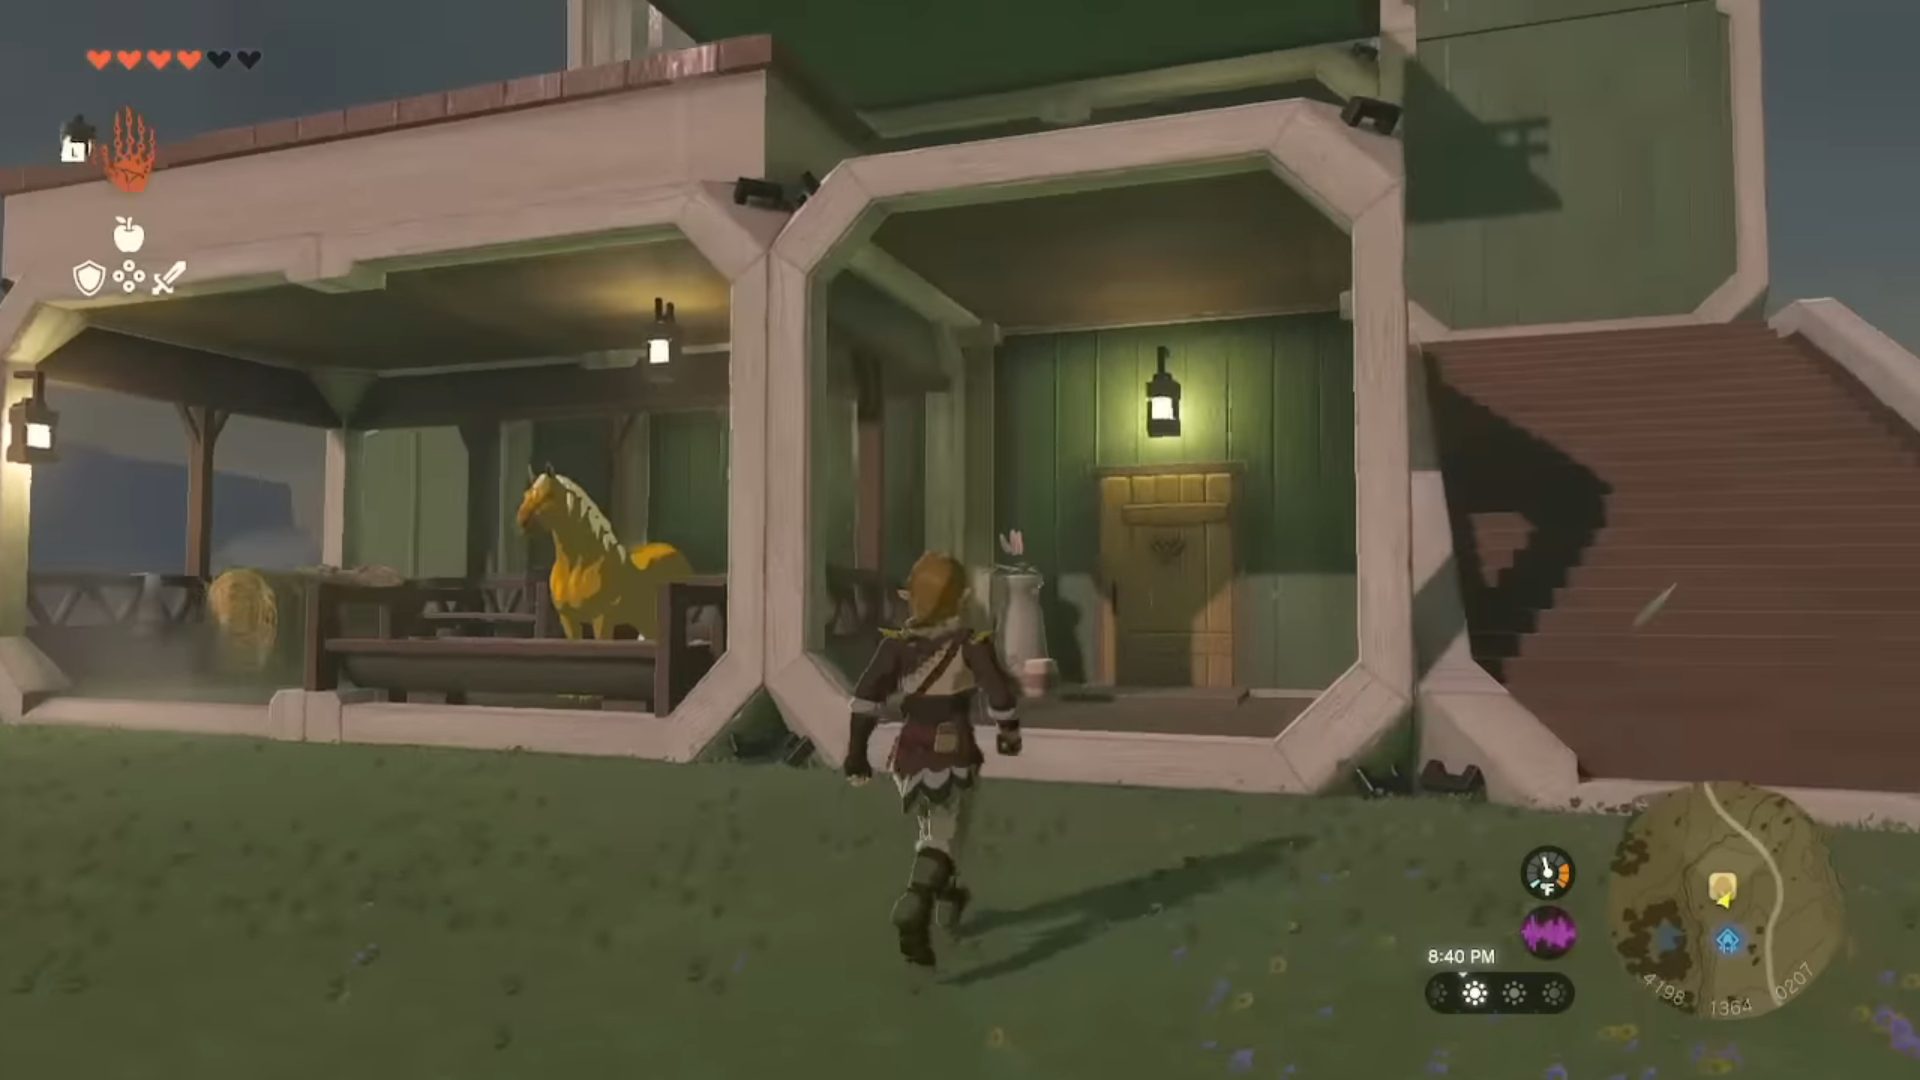 Modern house in Zelda: Tears of the Kingdom